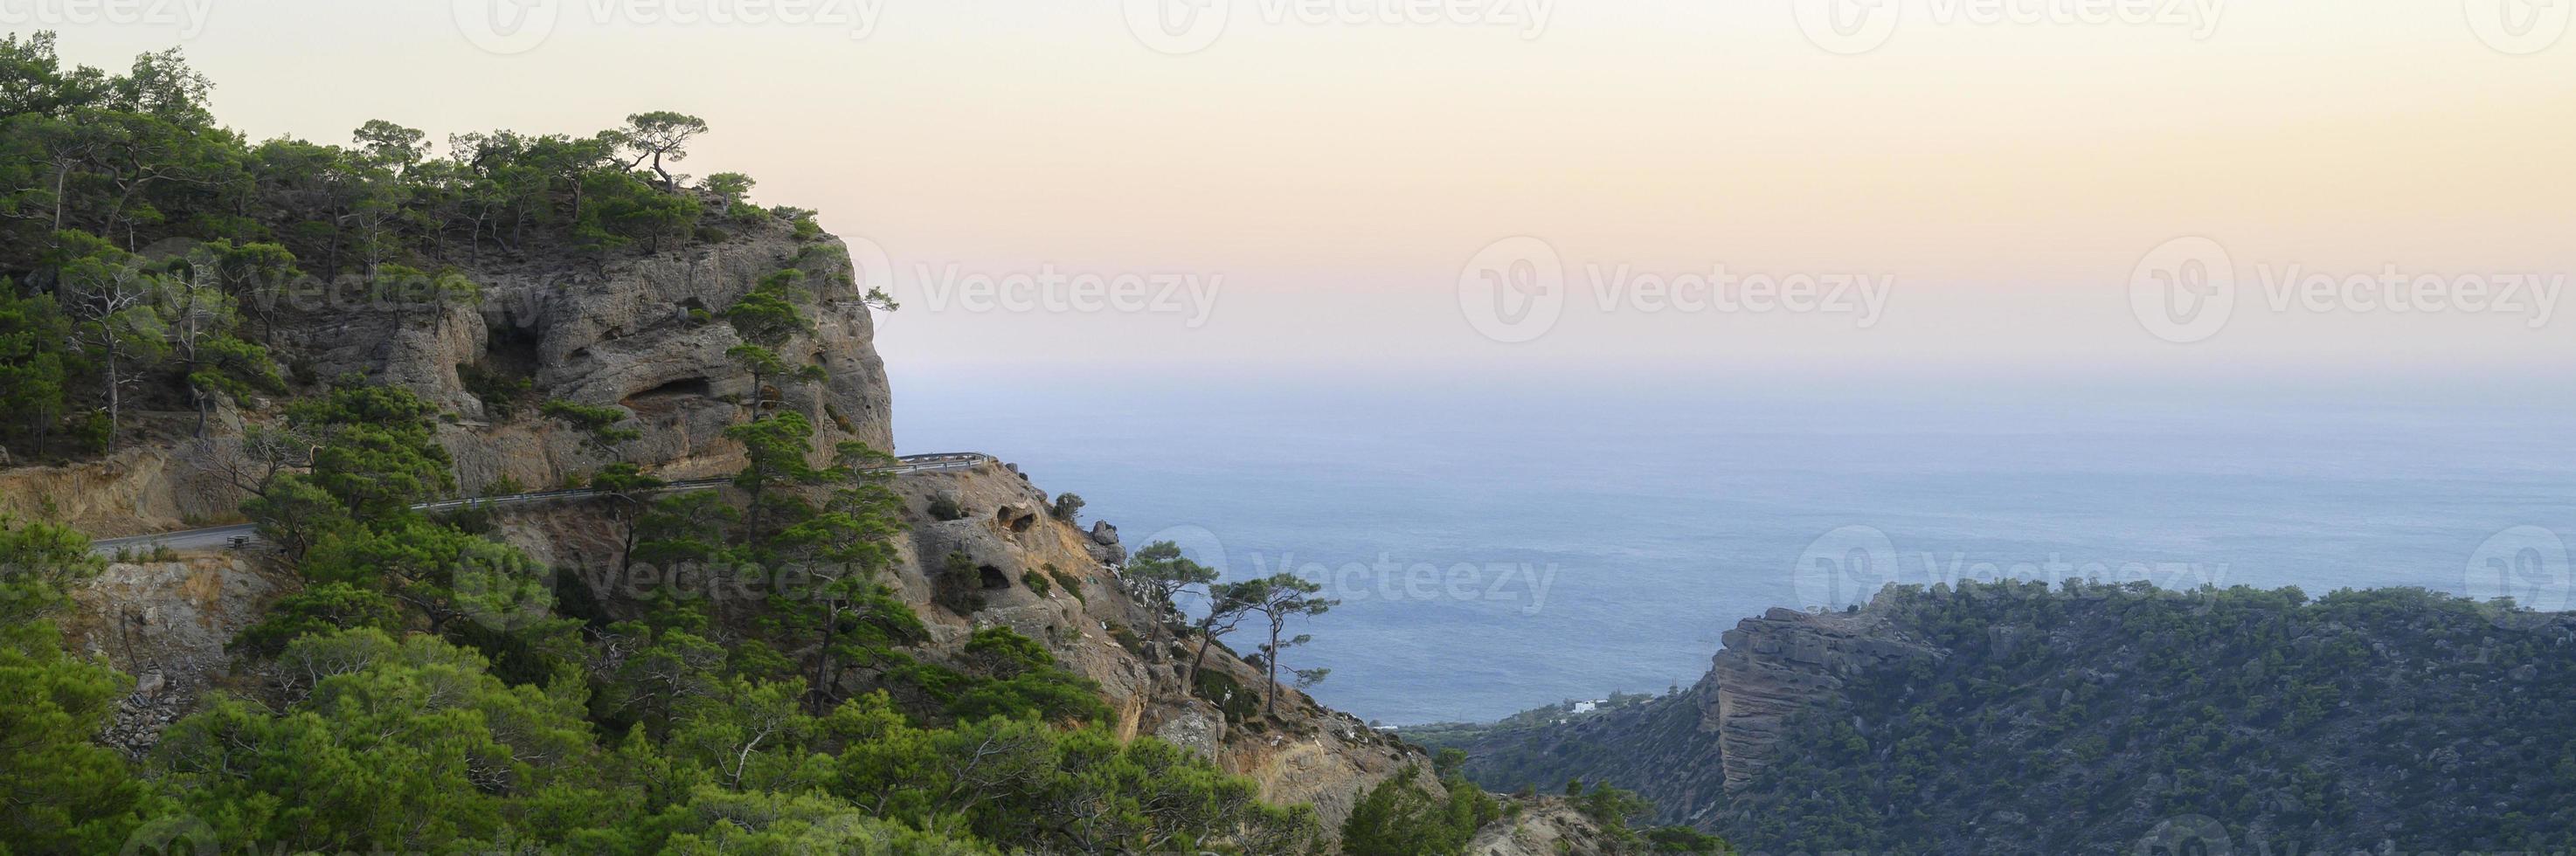 atardecer paisaje de montaña con vistas al mar mediterráneo foto